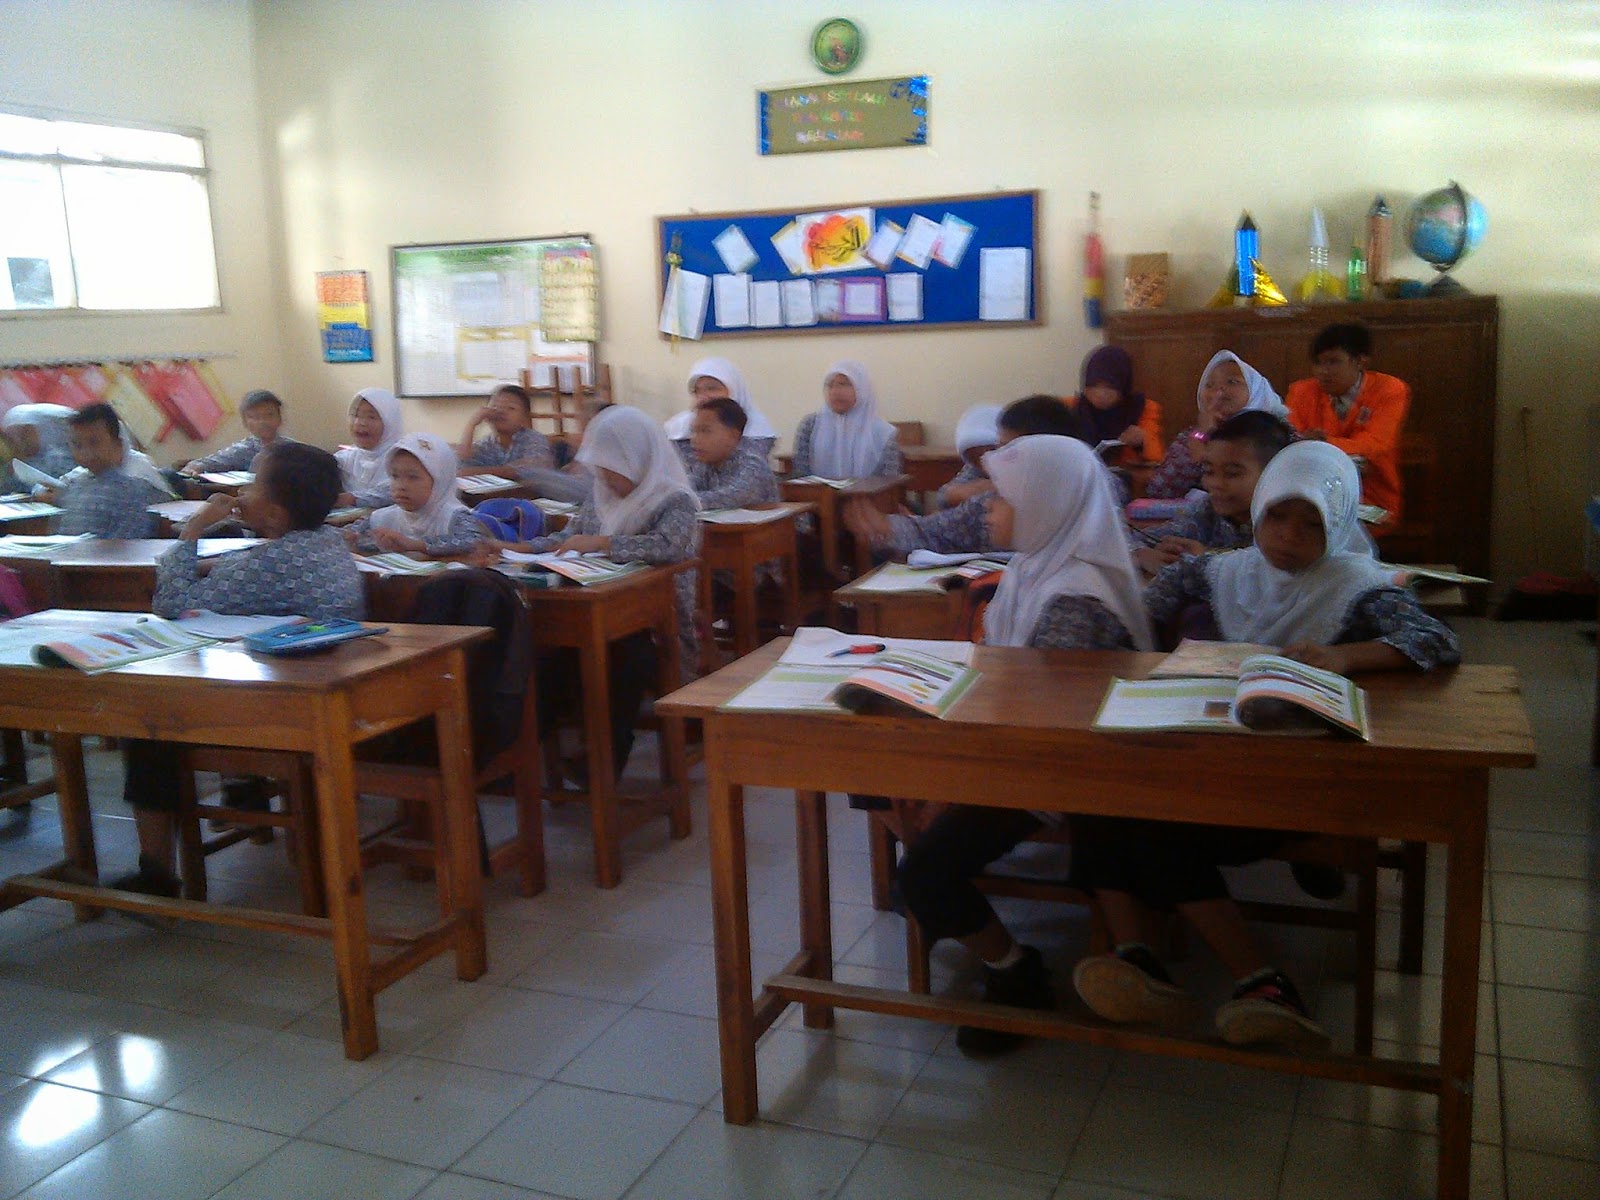 kegiatan belajar mengajar kelas 4 di SD Mendungan 2 Yogyakarta yang berlangsung pada hari jum at tanggal 05 09 2014 tentang tema selalu berhemat energi